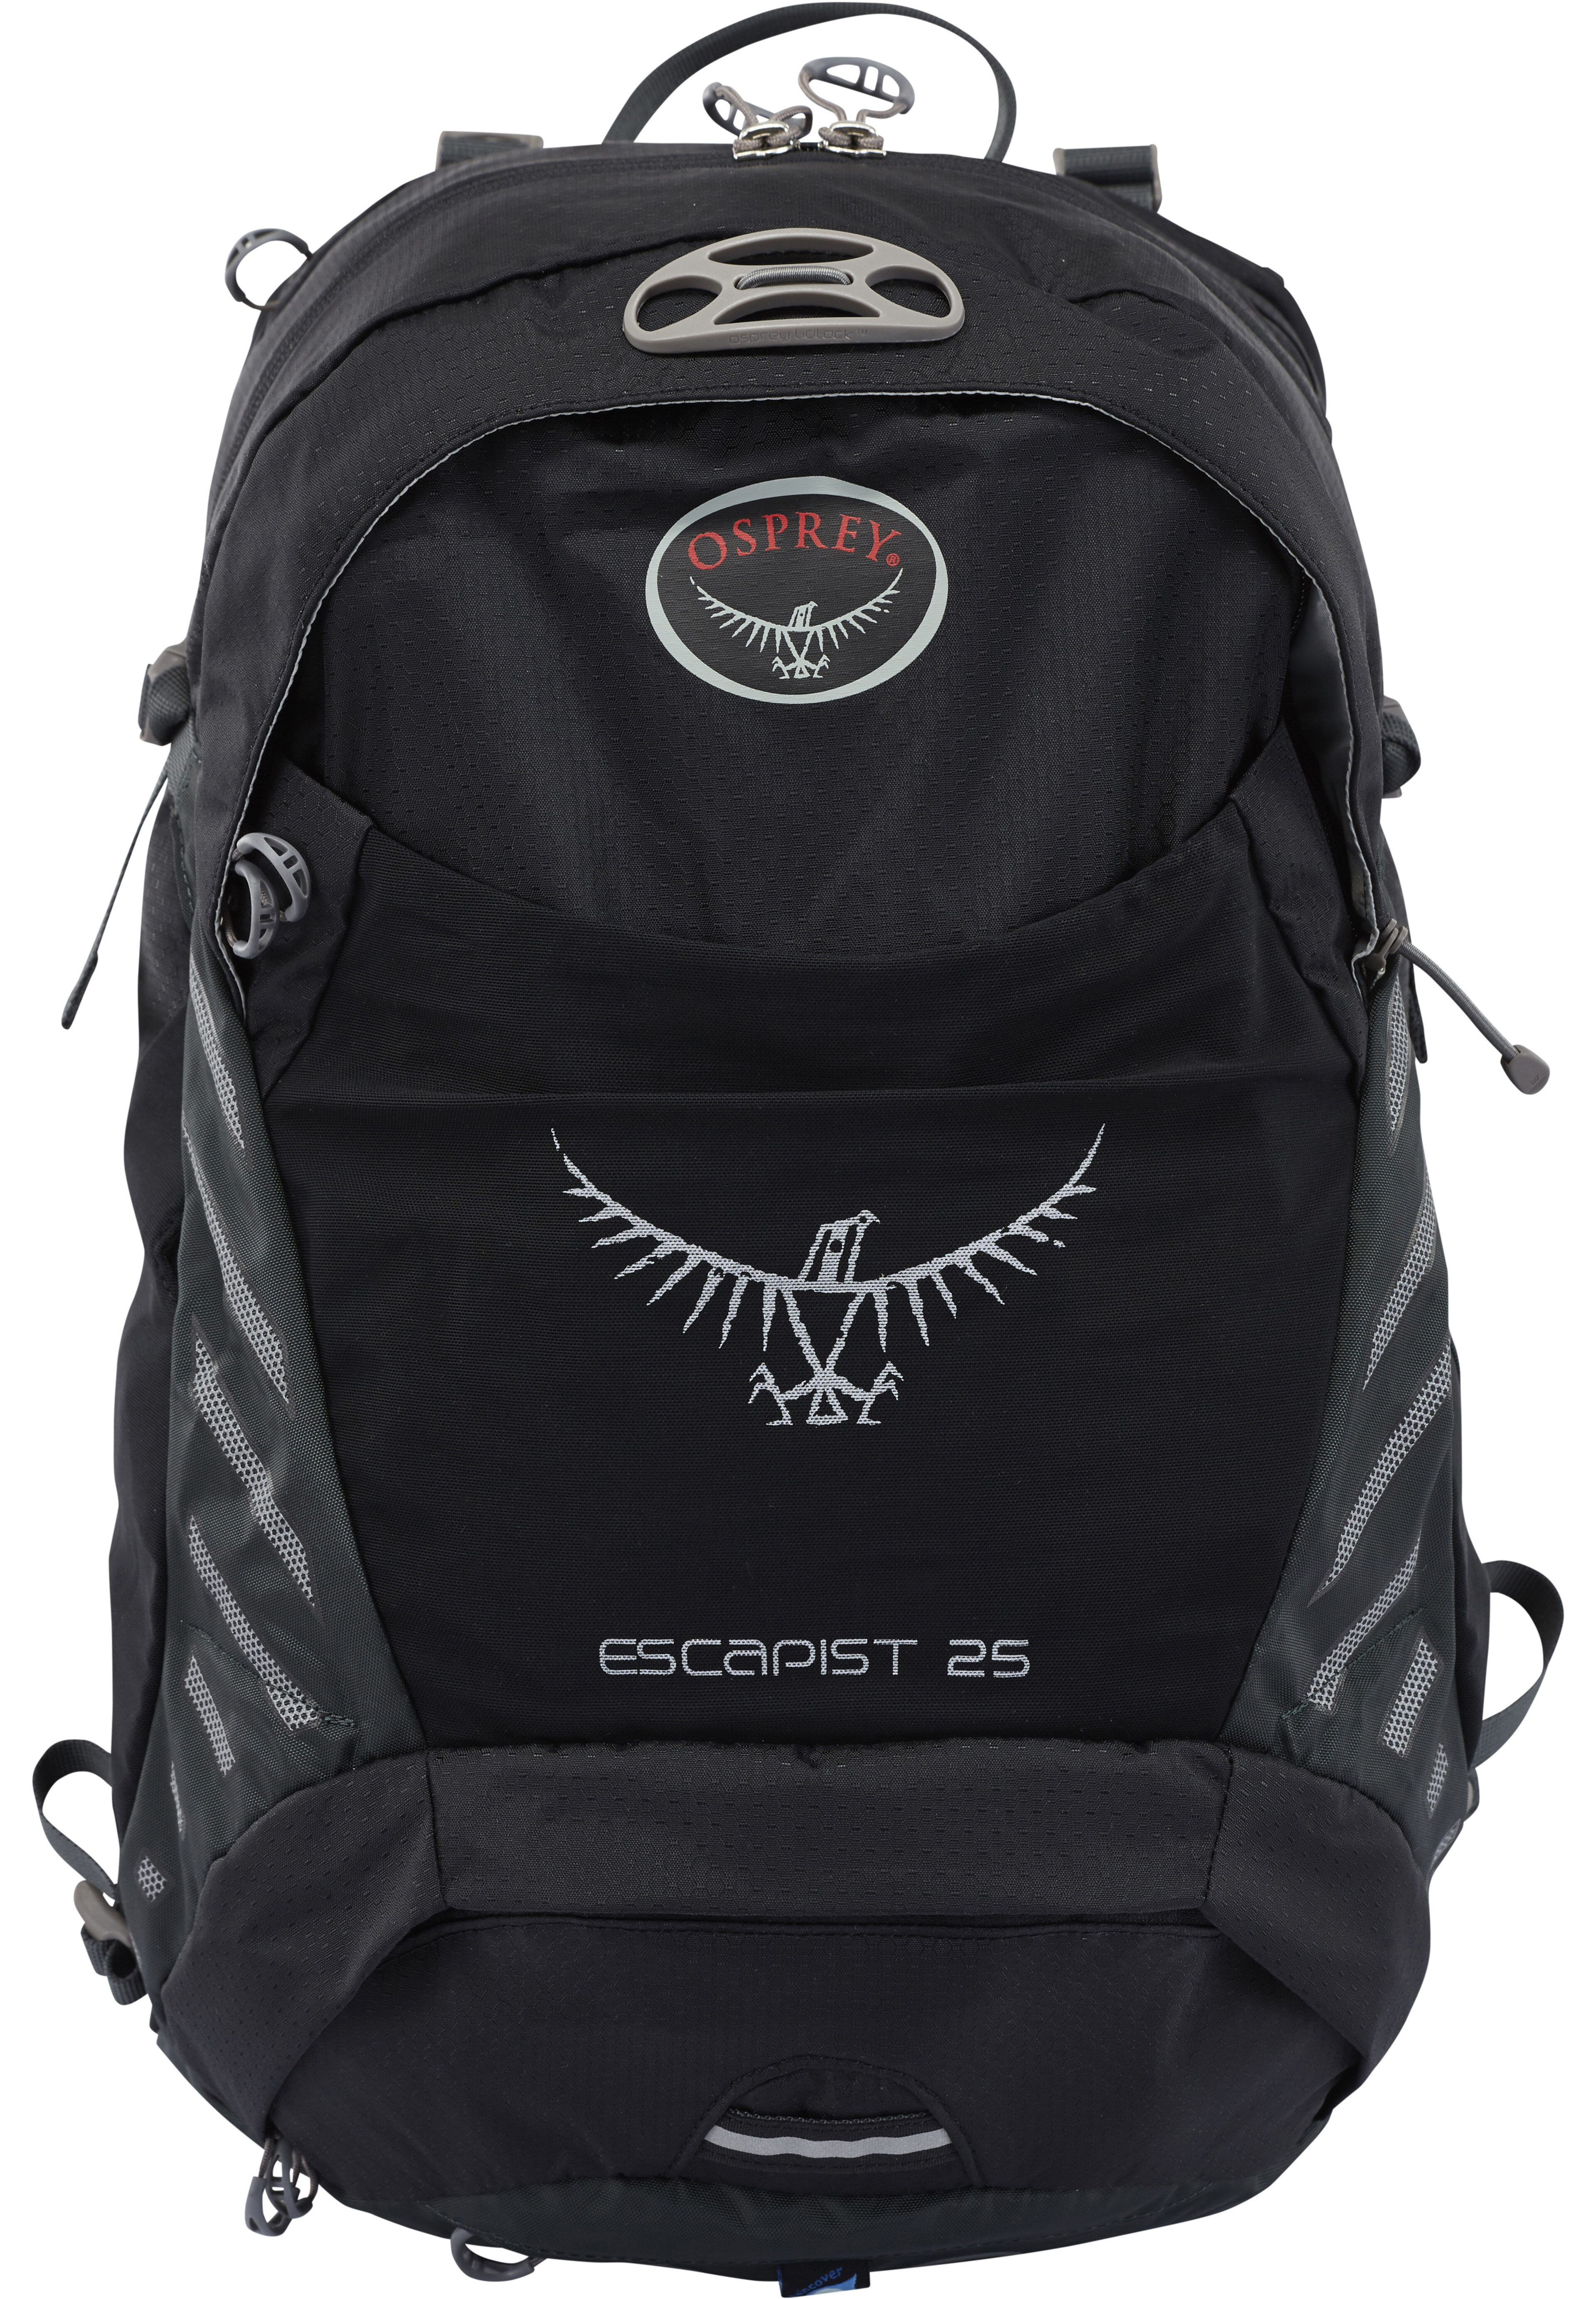 Osprey Escapist 25 Backpack S/M black at bikester.co.uk